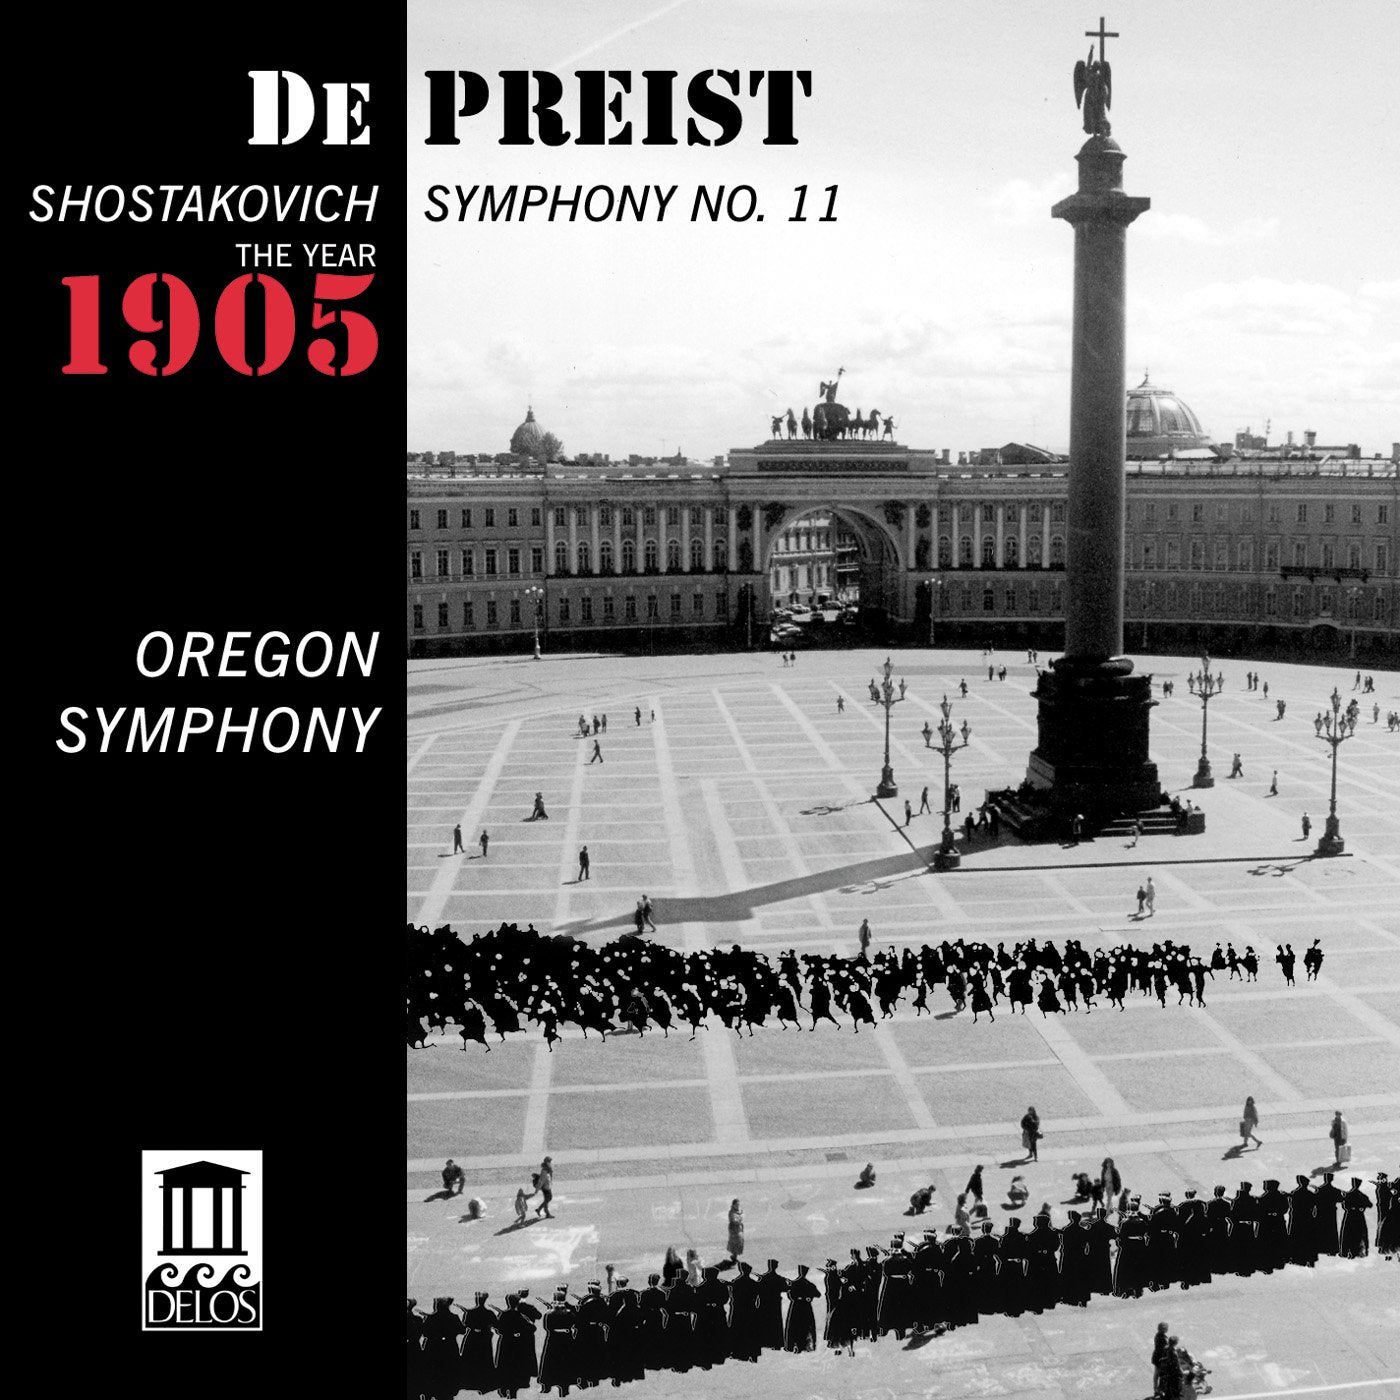 SHOSTAKOVICH: Symphony No. 11 - The Year 1905- Oregon Symphony, James dePriest